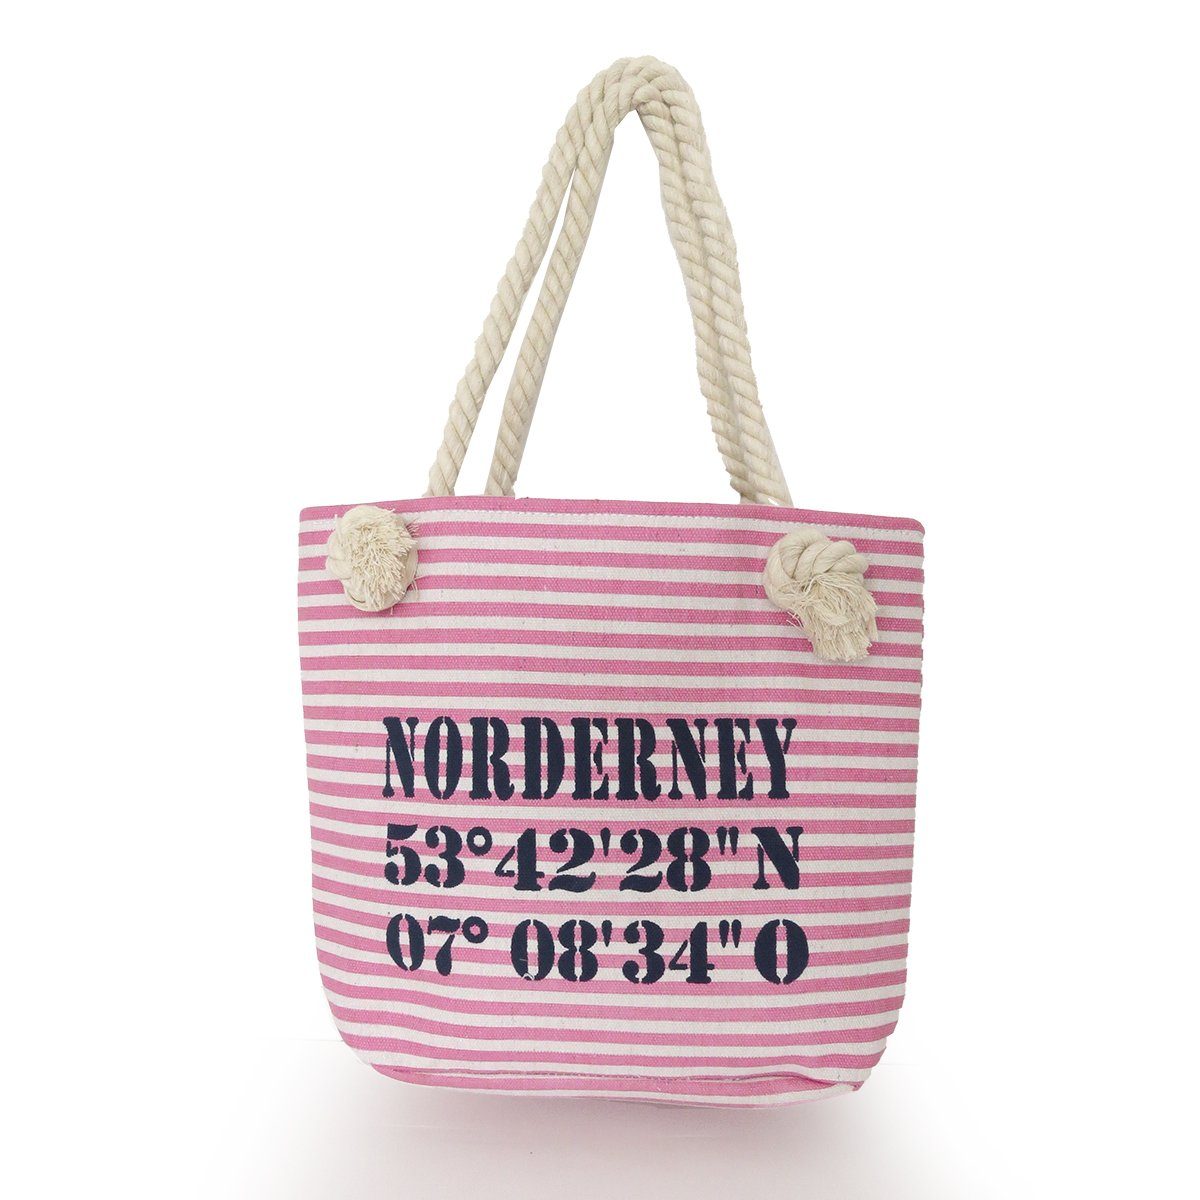 Sonia Originelli Umhängetasche XS Shopper "Norderney" Shopper Tasche Koordinaten, kleine Innentasche mit Reißverschluss rosa-marine